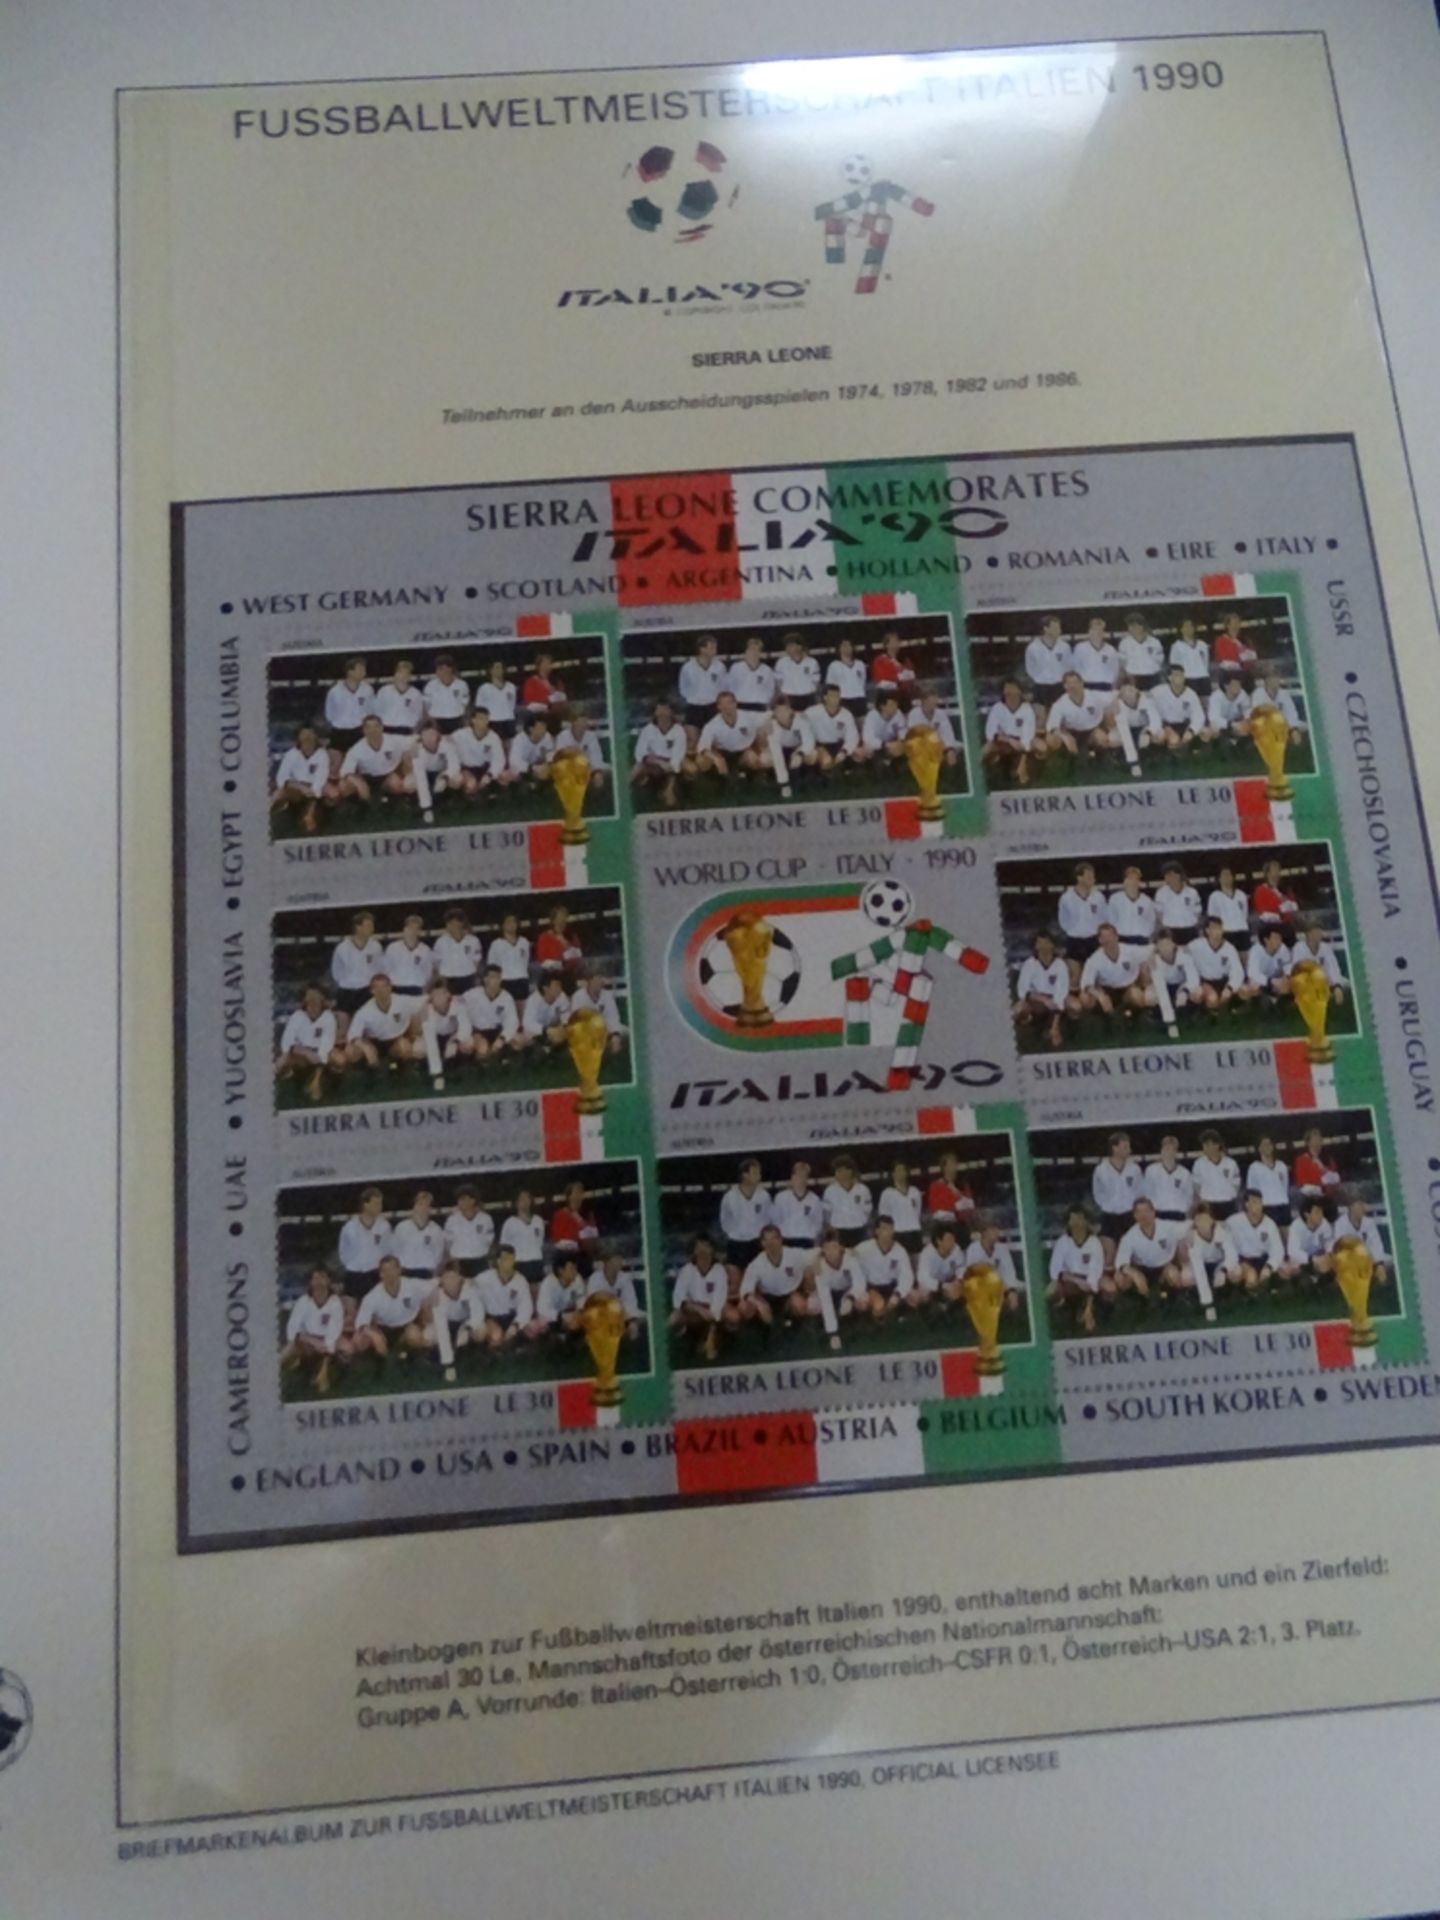 4x lomplette Linbder Ordner "Italia 90" Briefmarkenalbum zur Fussball- Weltmeisterschaft, official - Image 7 of 13